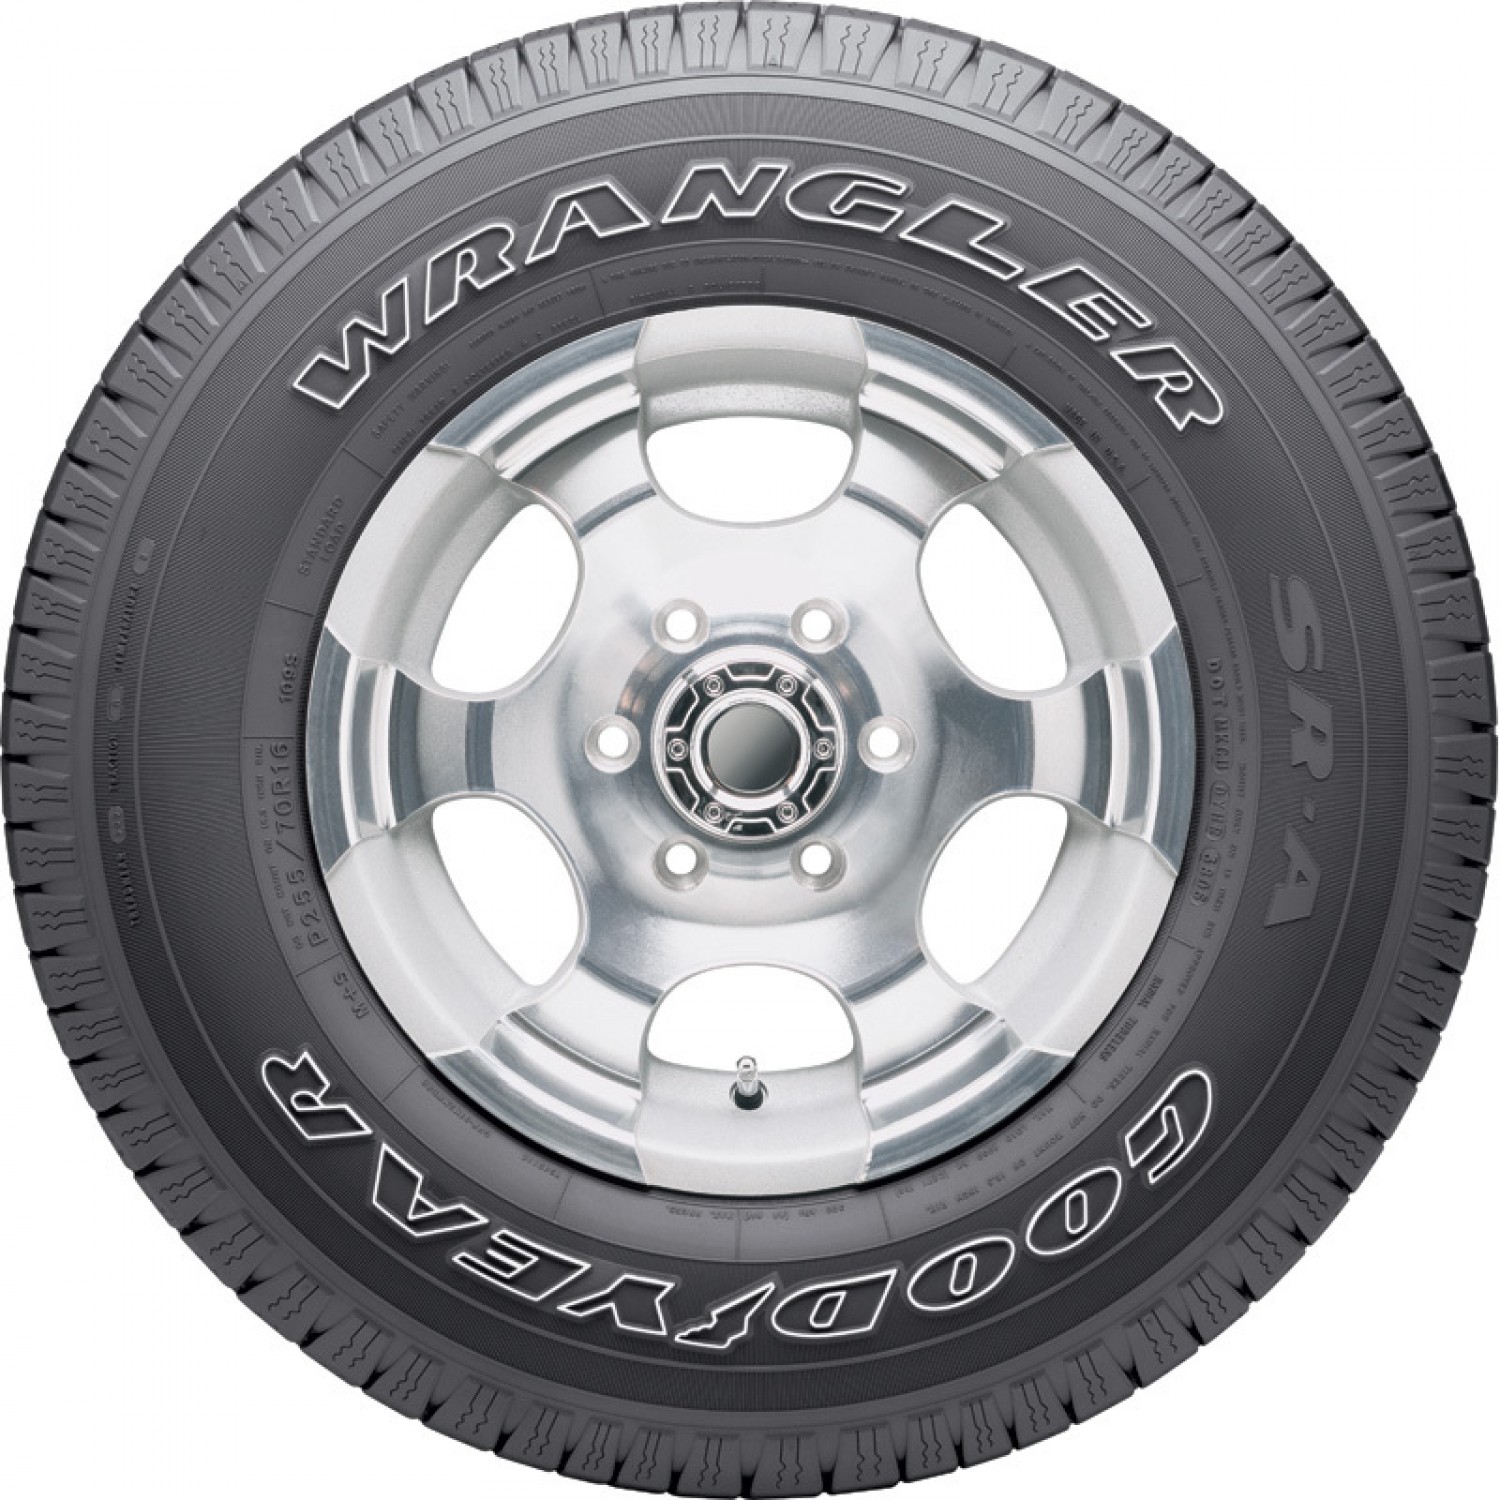 Goodyear Wrangler SR-A Outlined White Letters Tire (P255/75R17 113S)  vzn121215